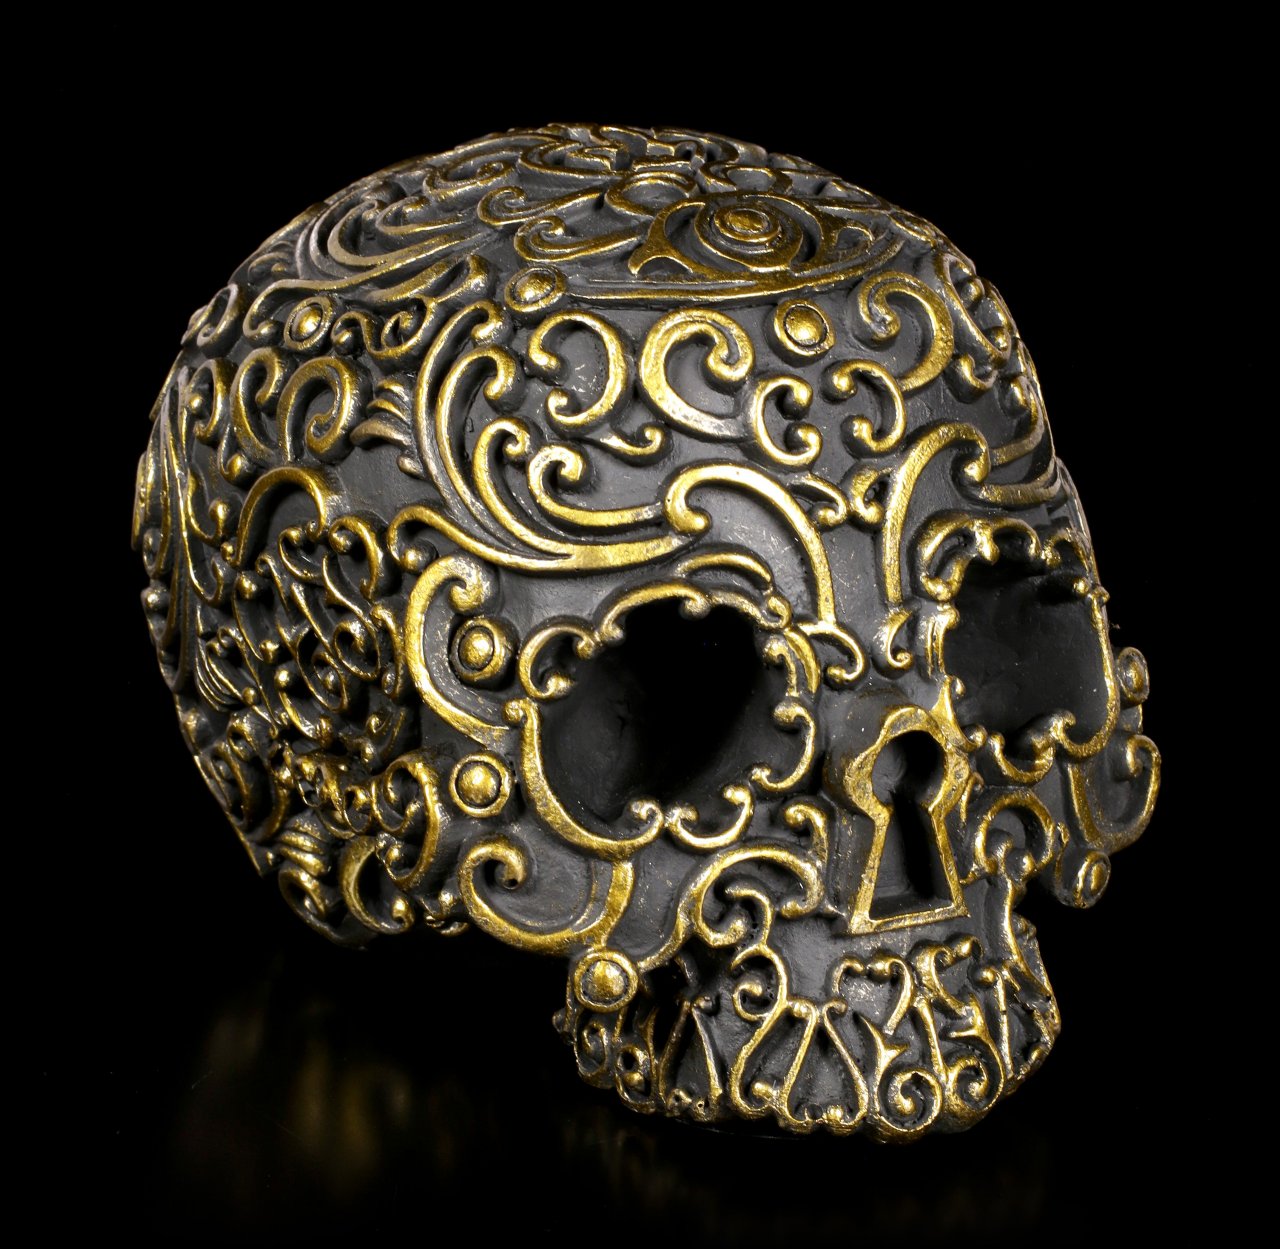 Black Skull - Golden Lock